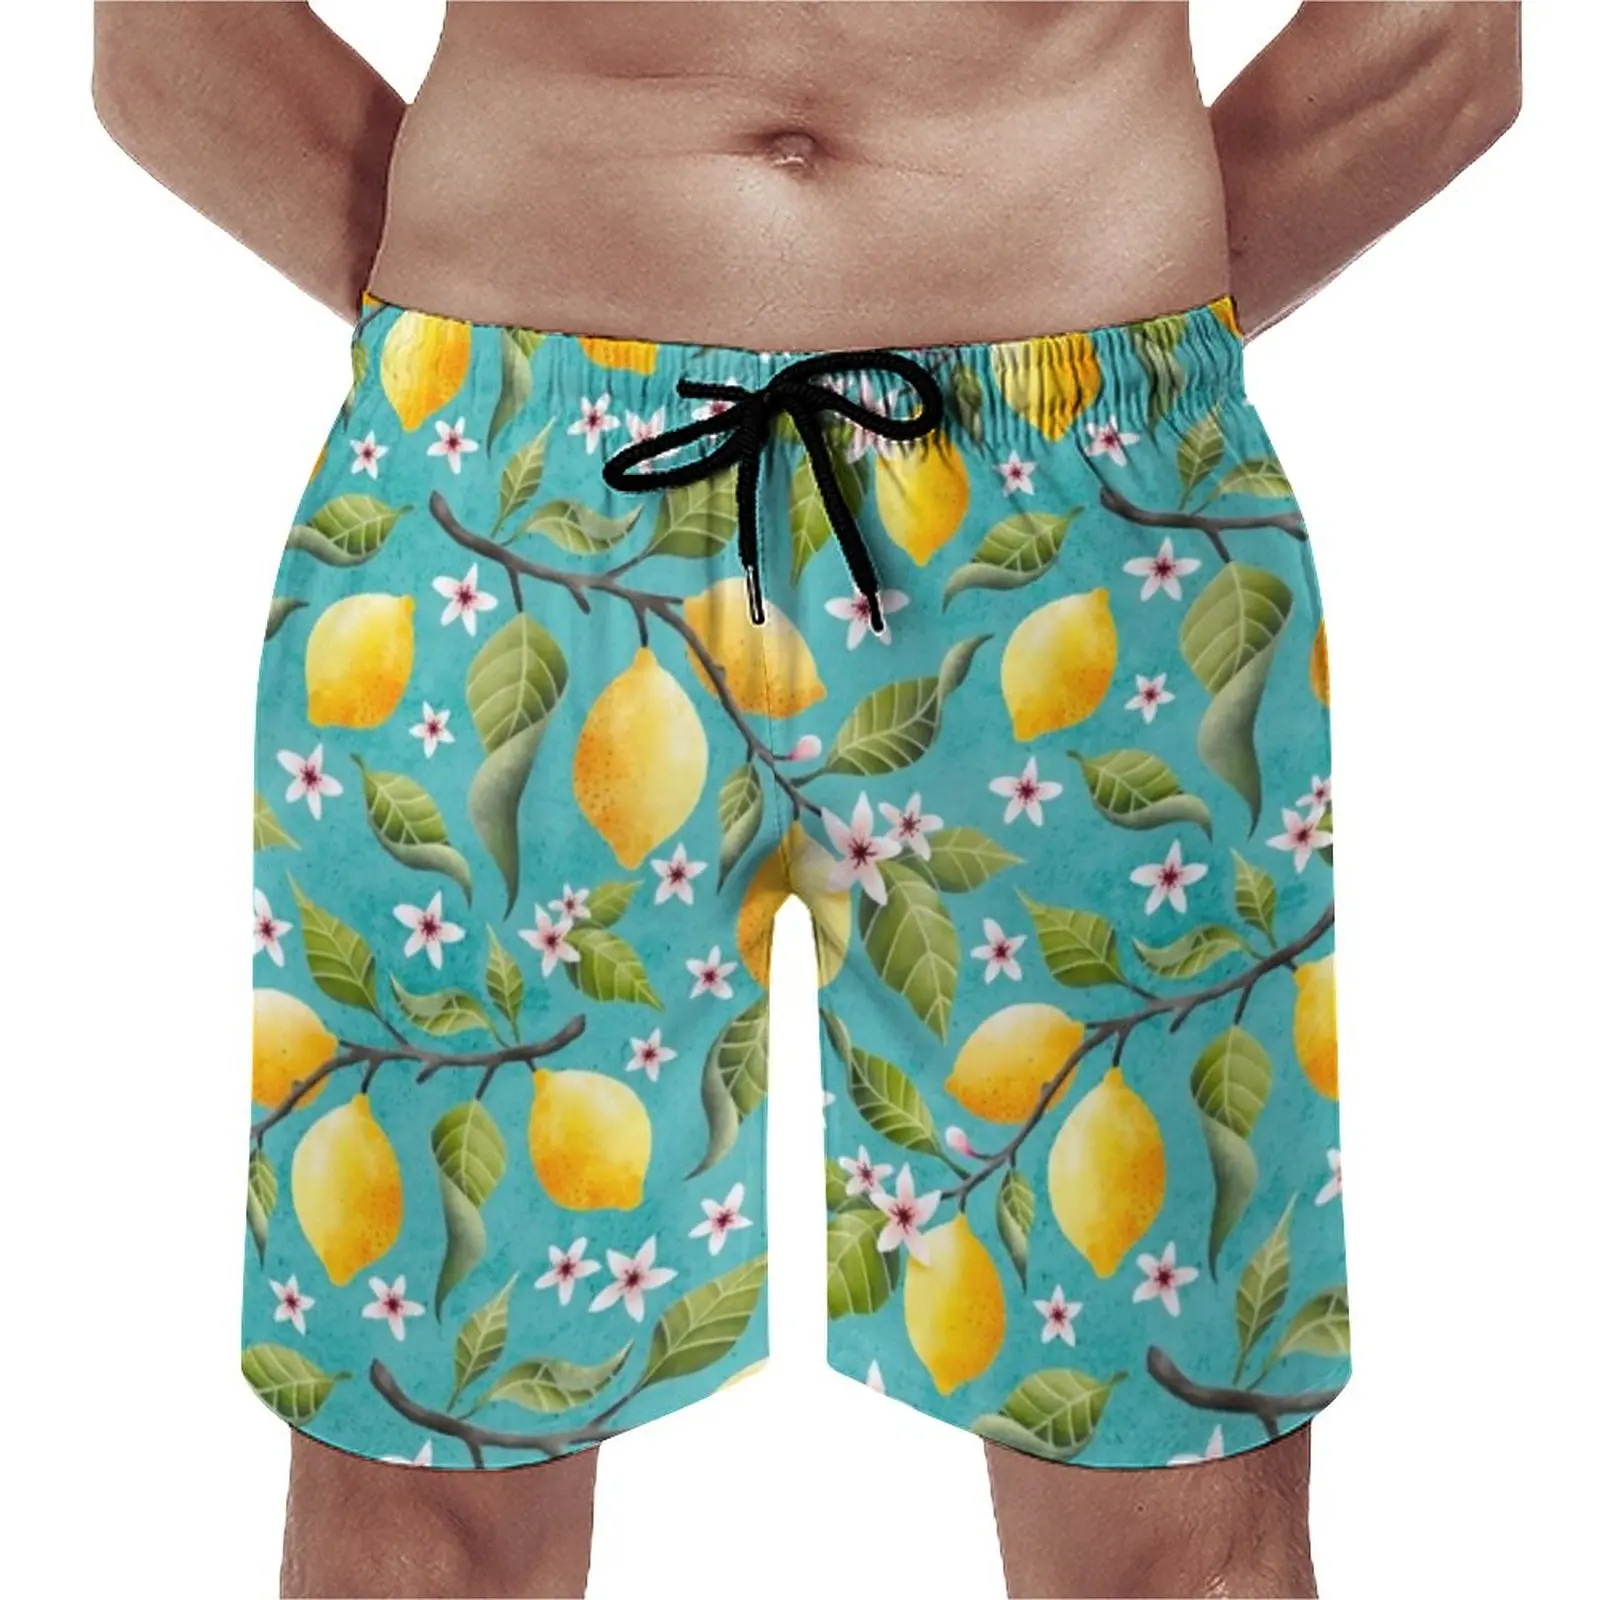 

Шорты мужские с принтом лимона и листьев, короткие плавки с эластичным поясом, плавки для плавания, большие размеры